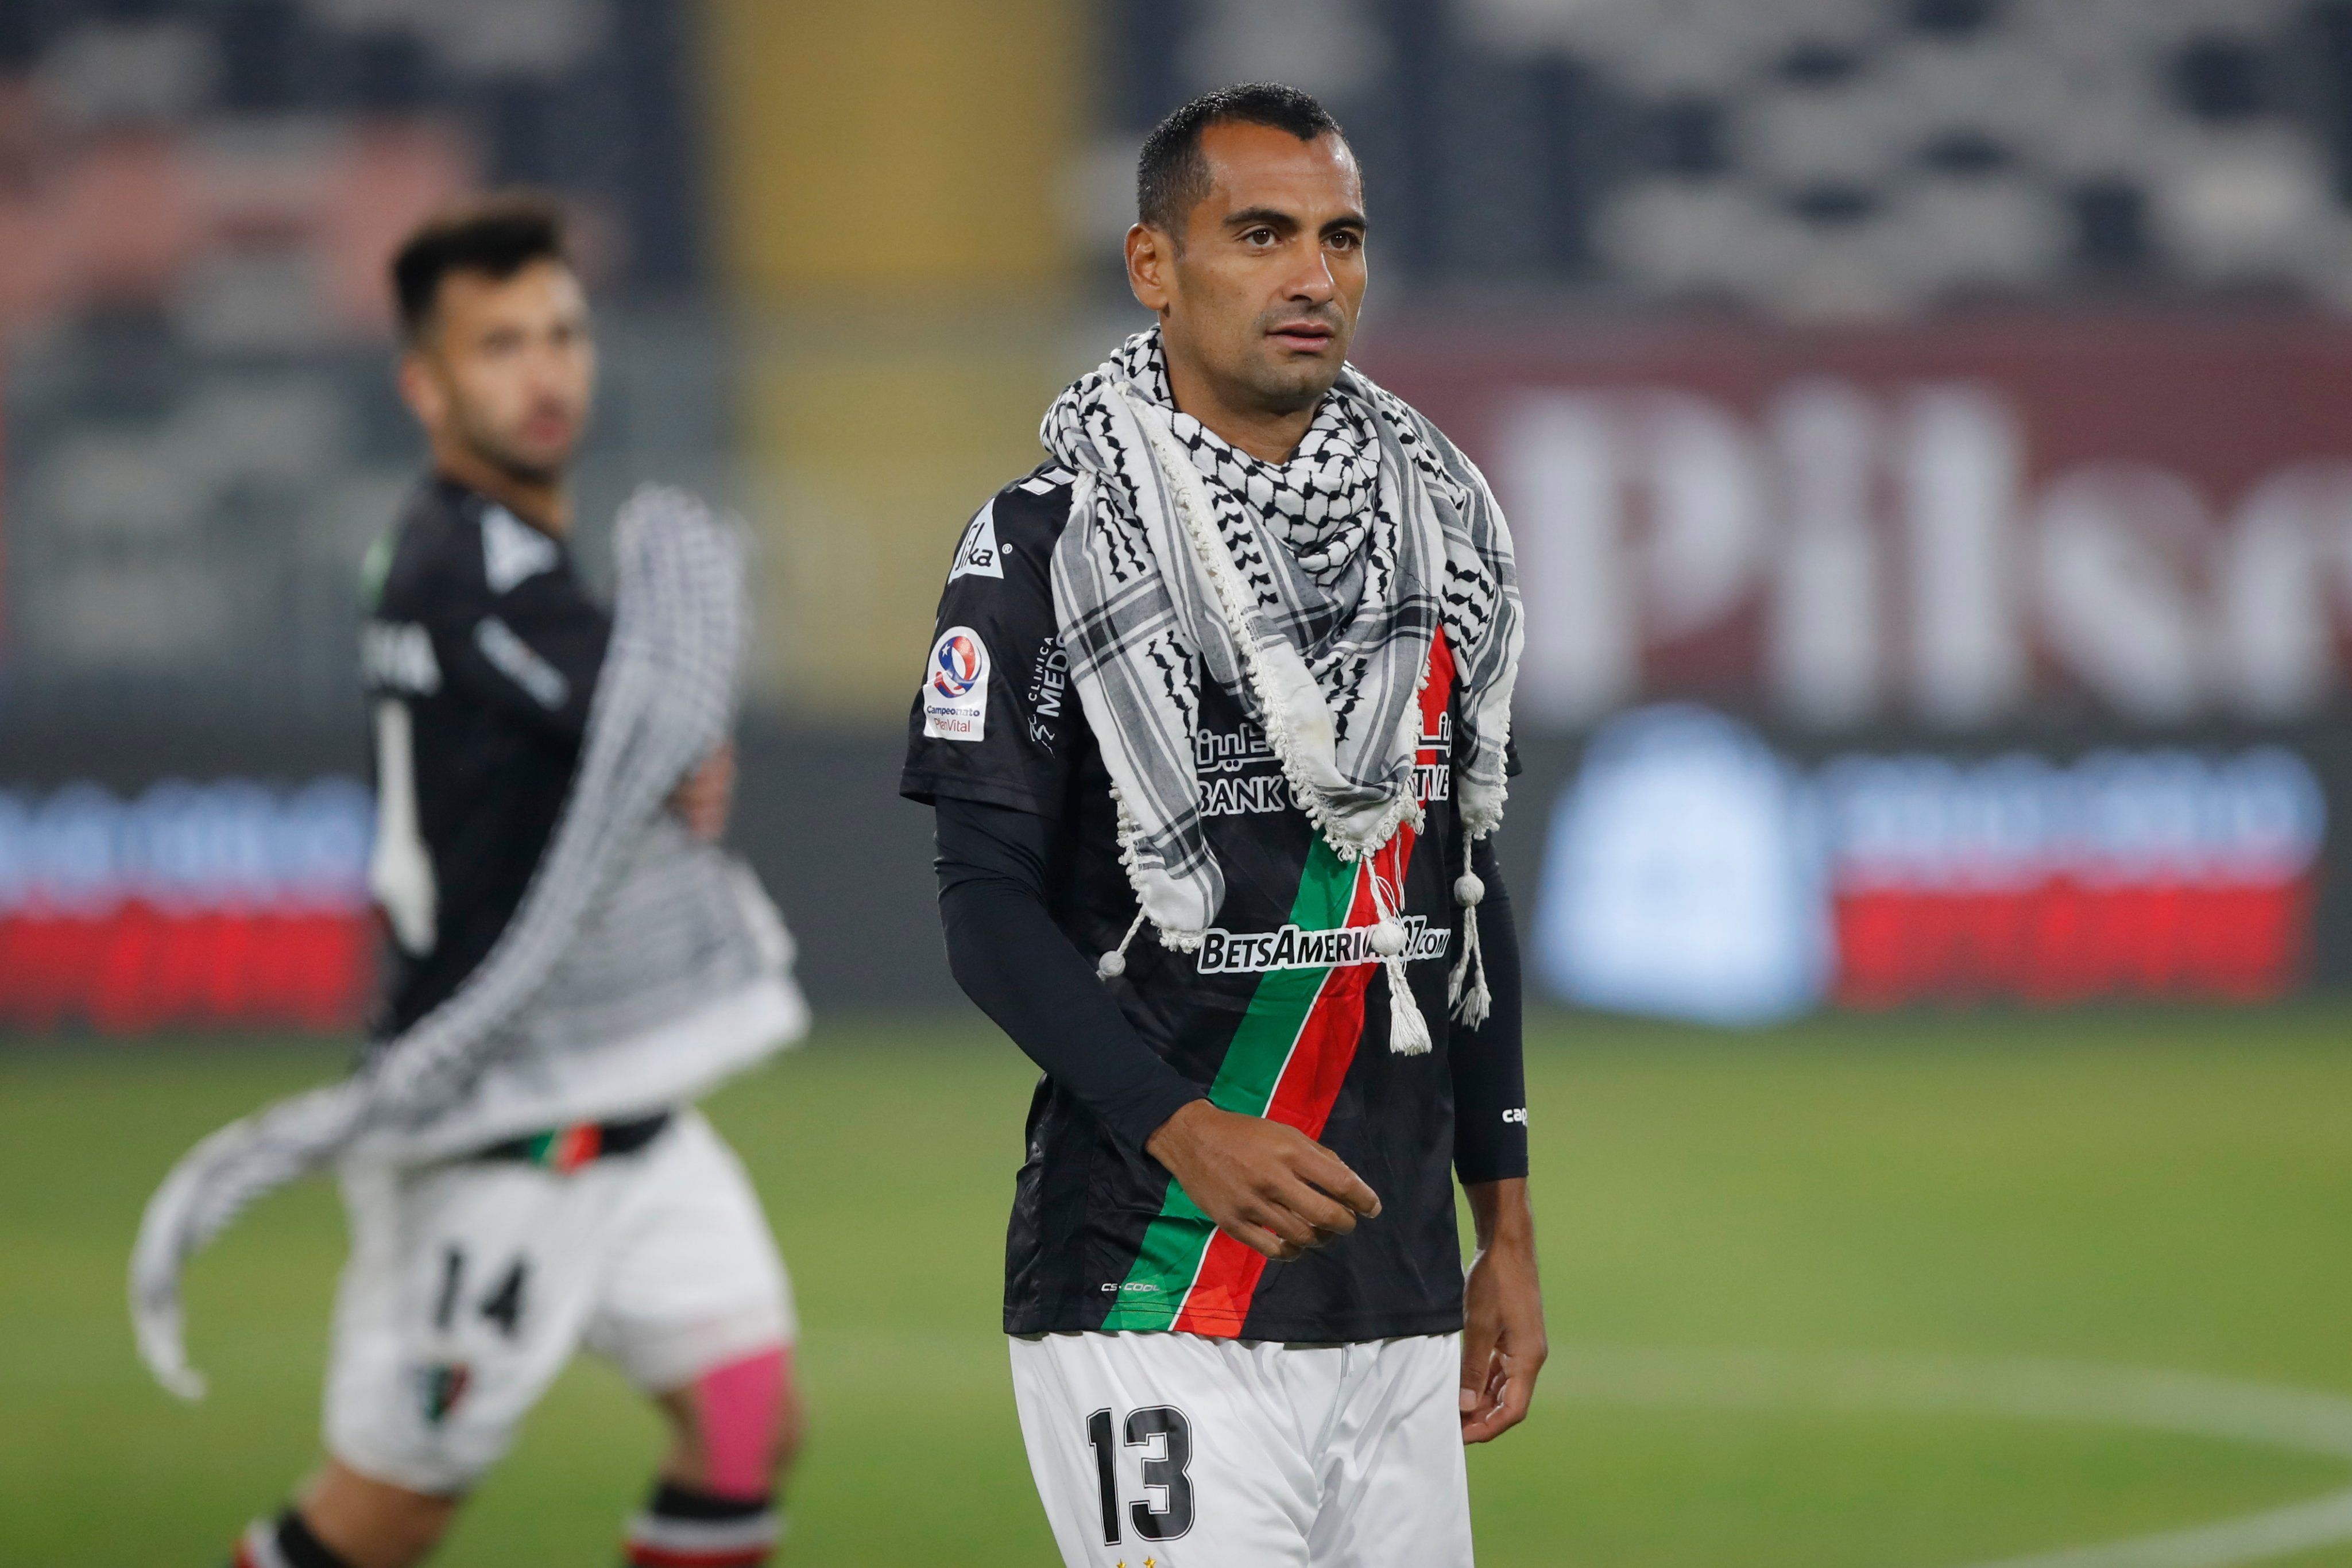 Deretan Pesepak Bola Yang Berbagi Pesan Solidaritas Dengan Palestina Halaman 1 Kompasiana Com